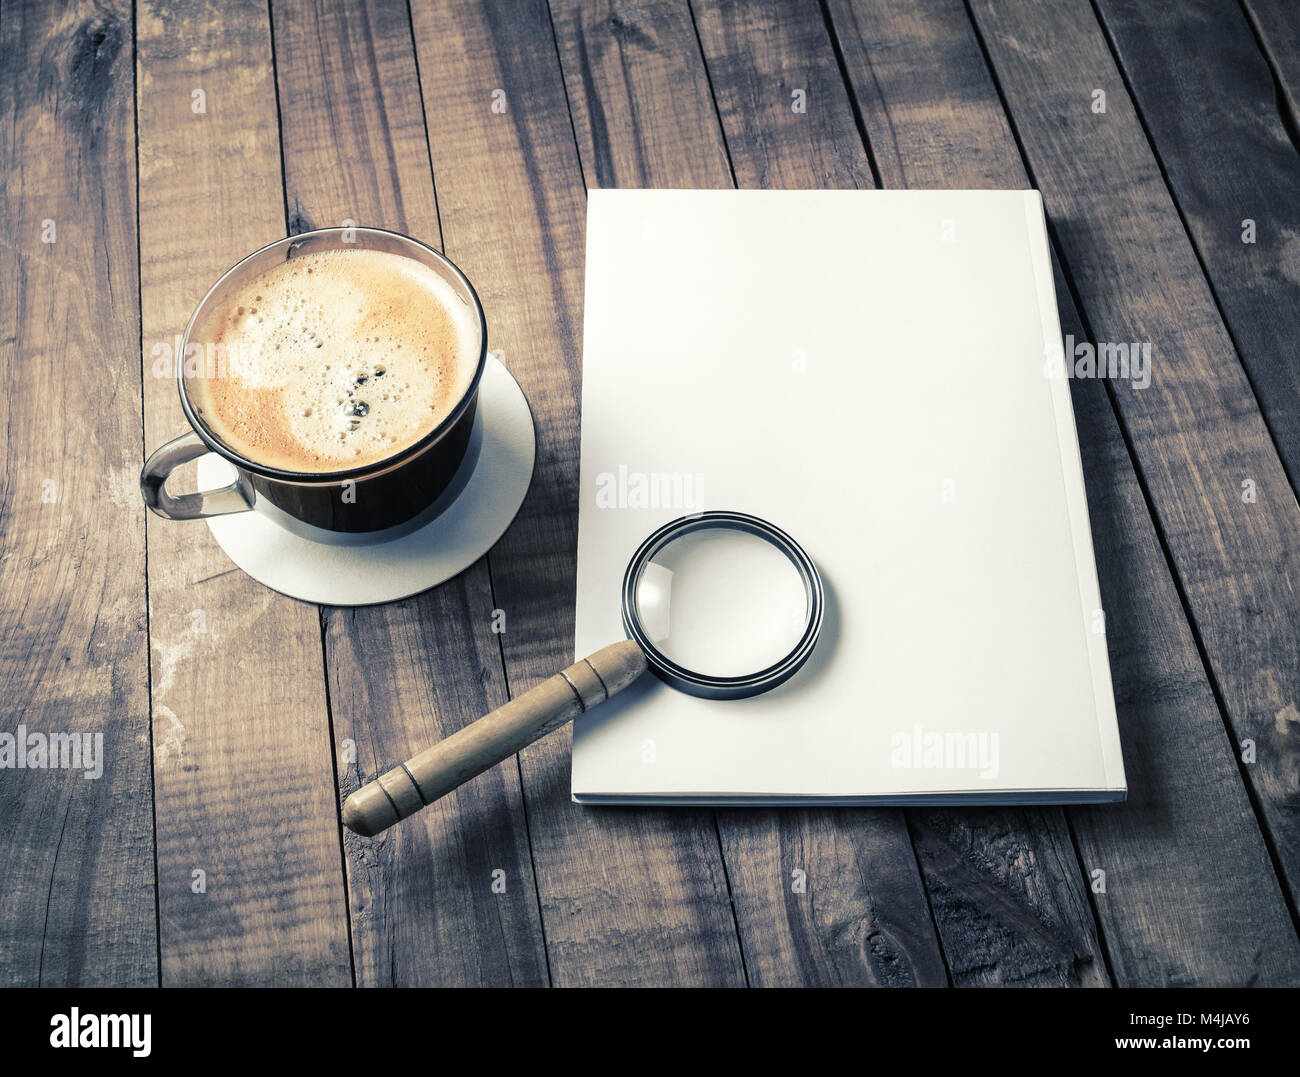 Folleto, lupa, taza de café Fotografía de stock - Alamy